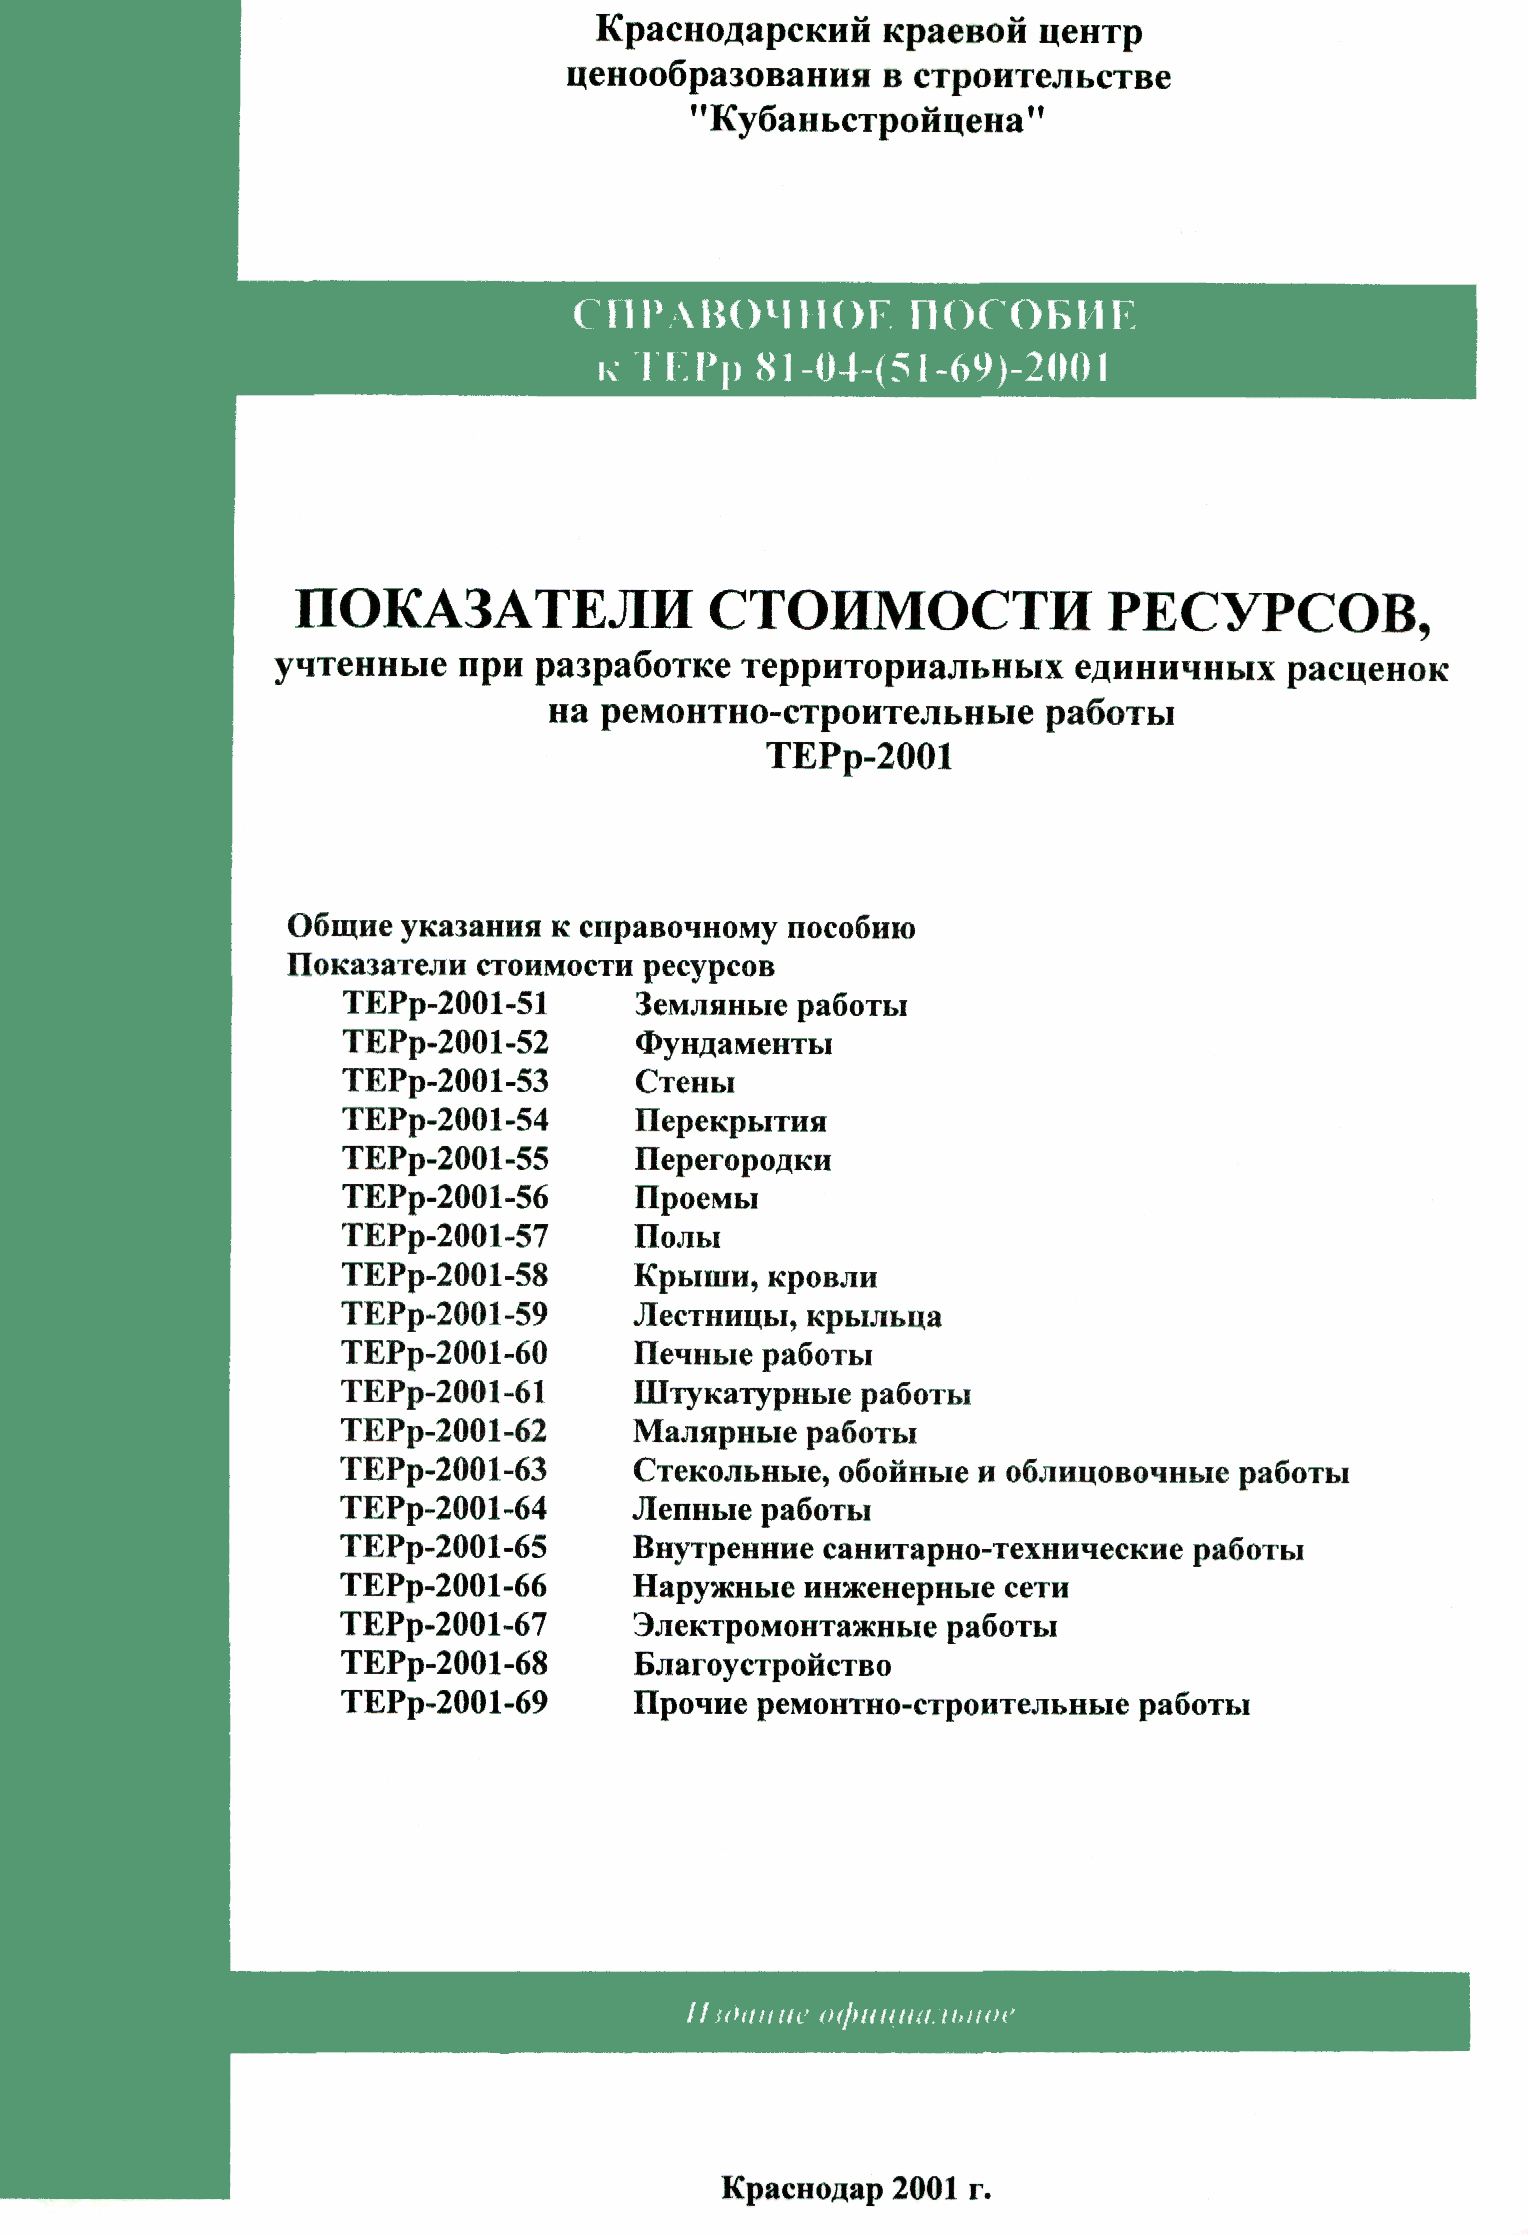 Справочное пособие к ТЕРр 81-04-69-2001